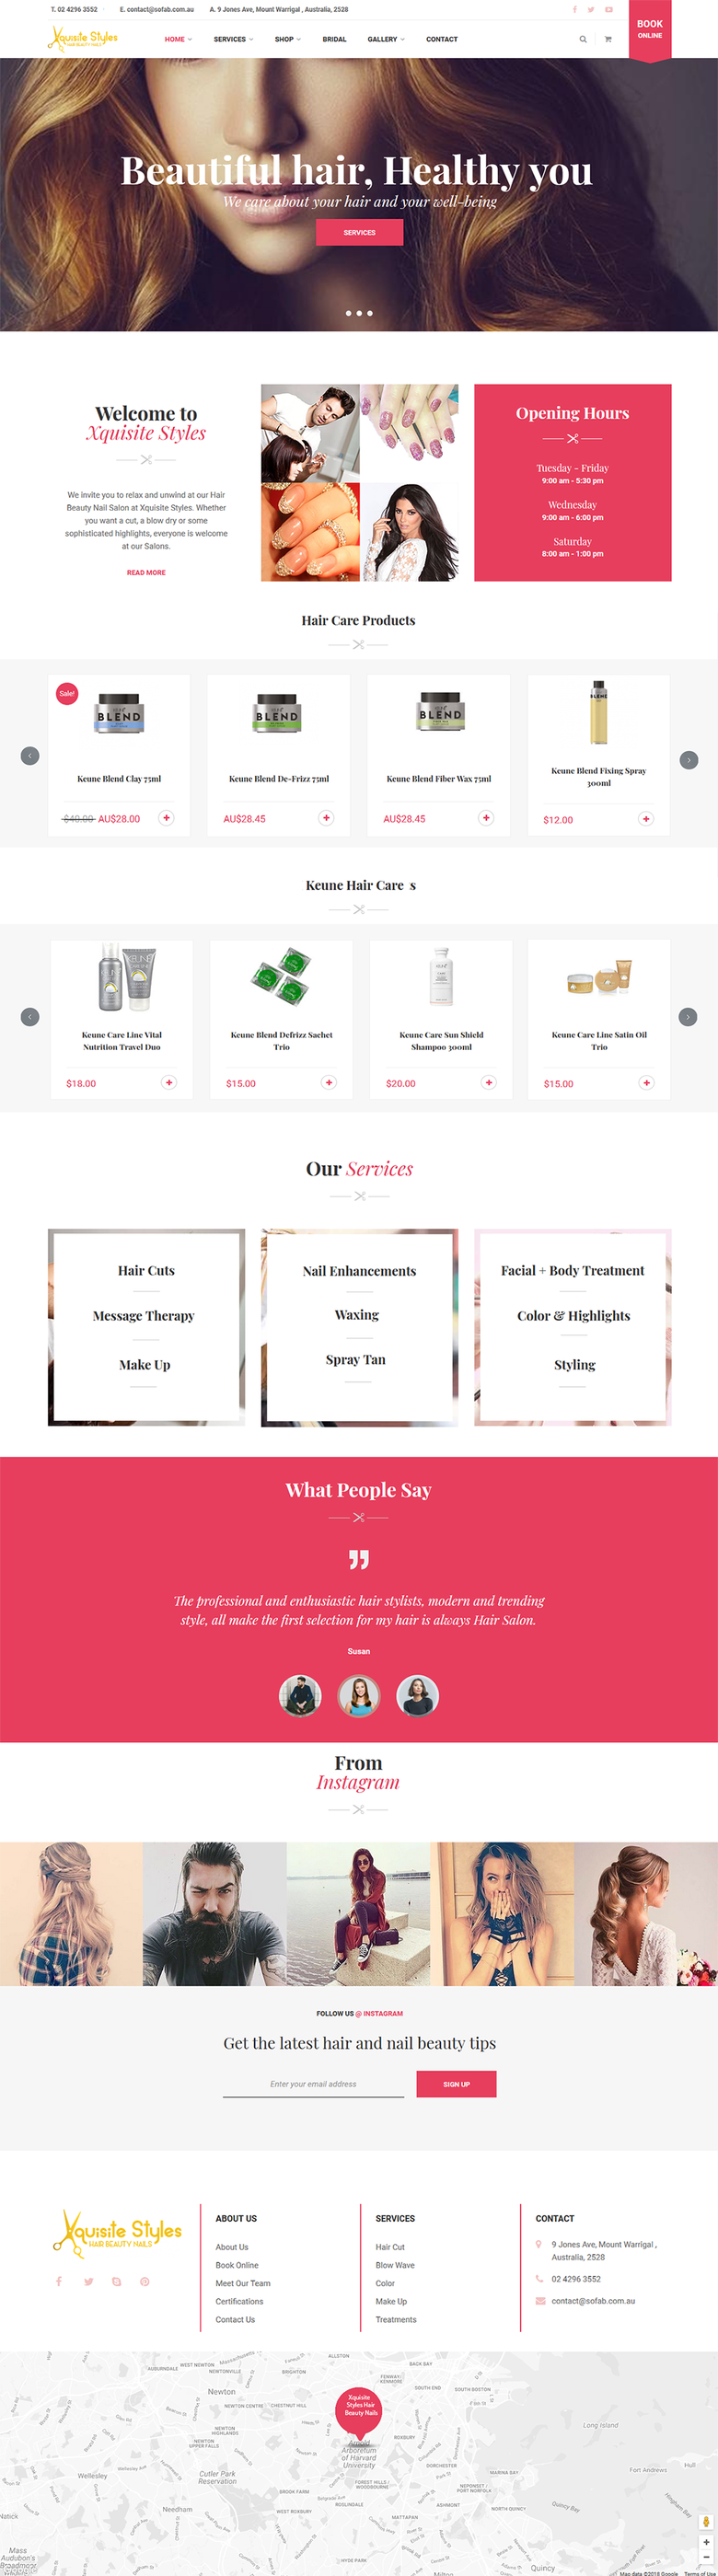 Shopify Store customization